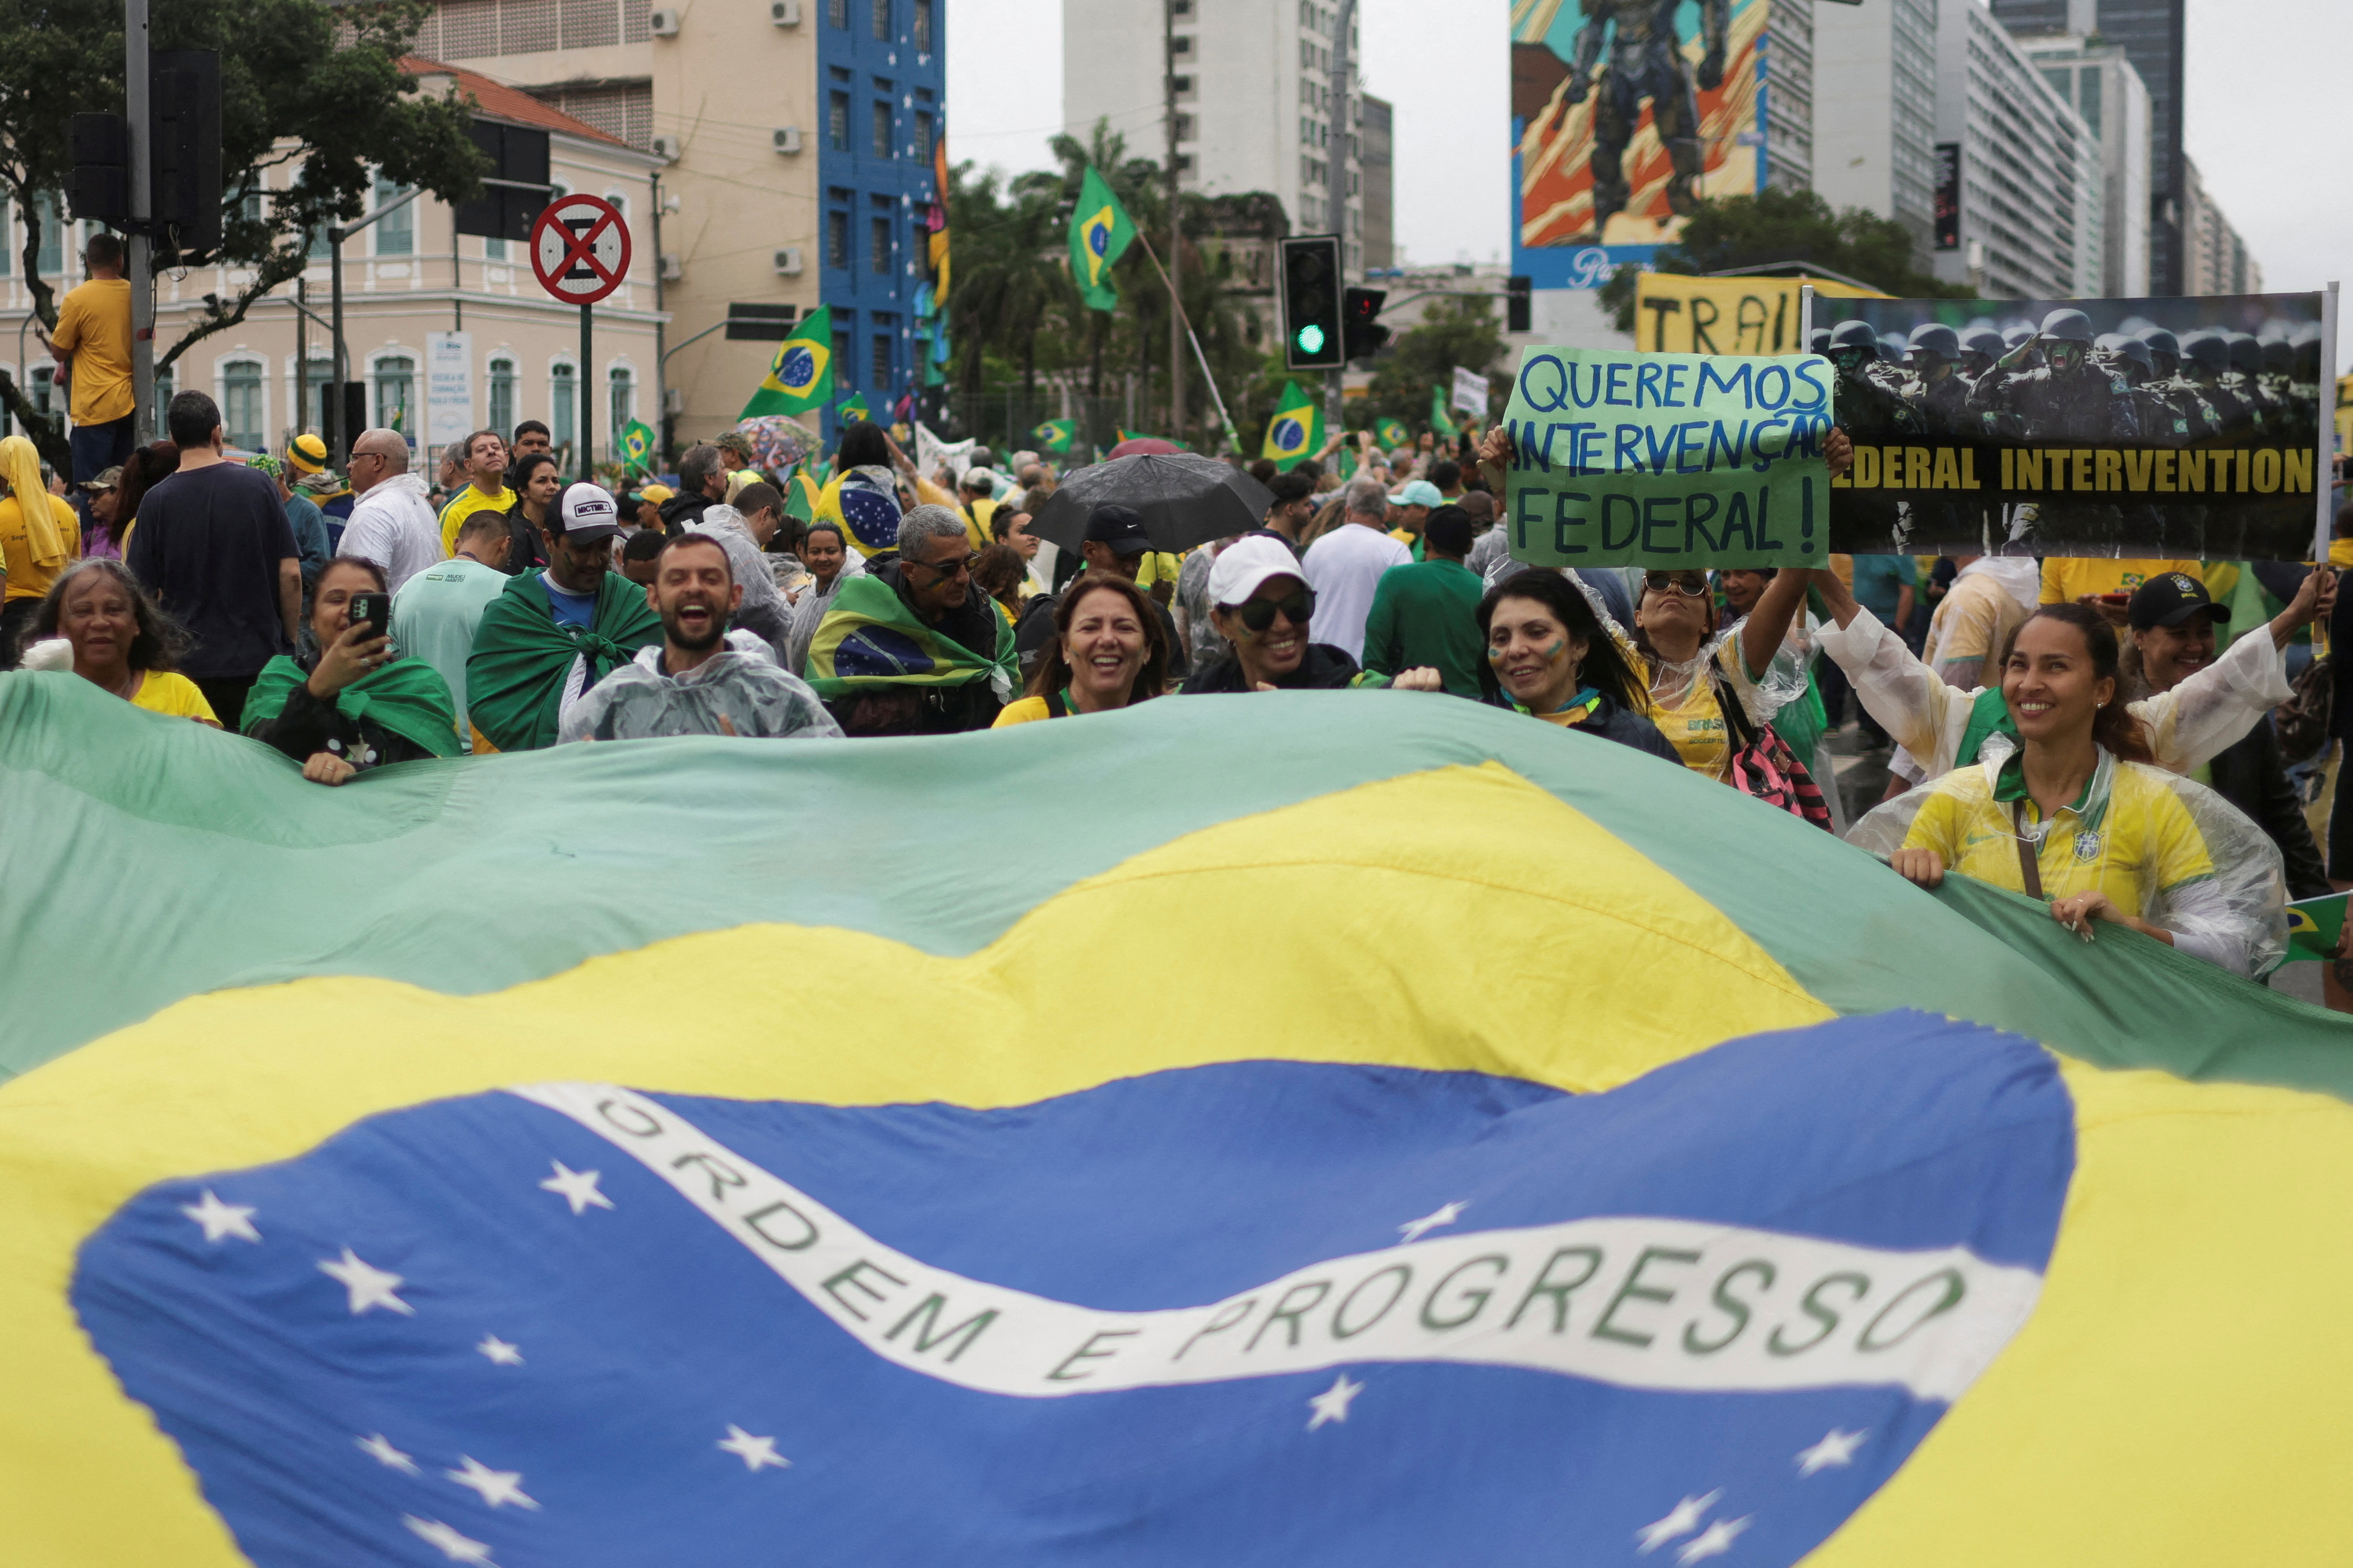 Bolsonaristische Demonstranten fordern ein Eingreifen des Bundes, um die Amtsenthebung des Präsidenten zu verhindern (REUTERS)